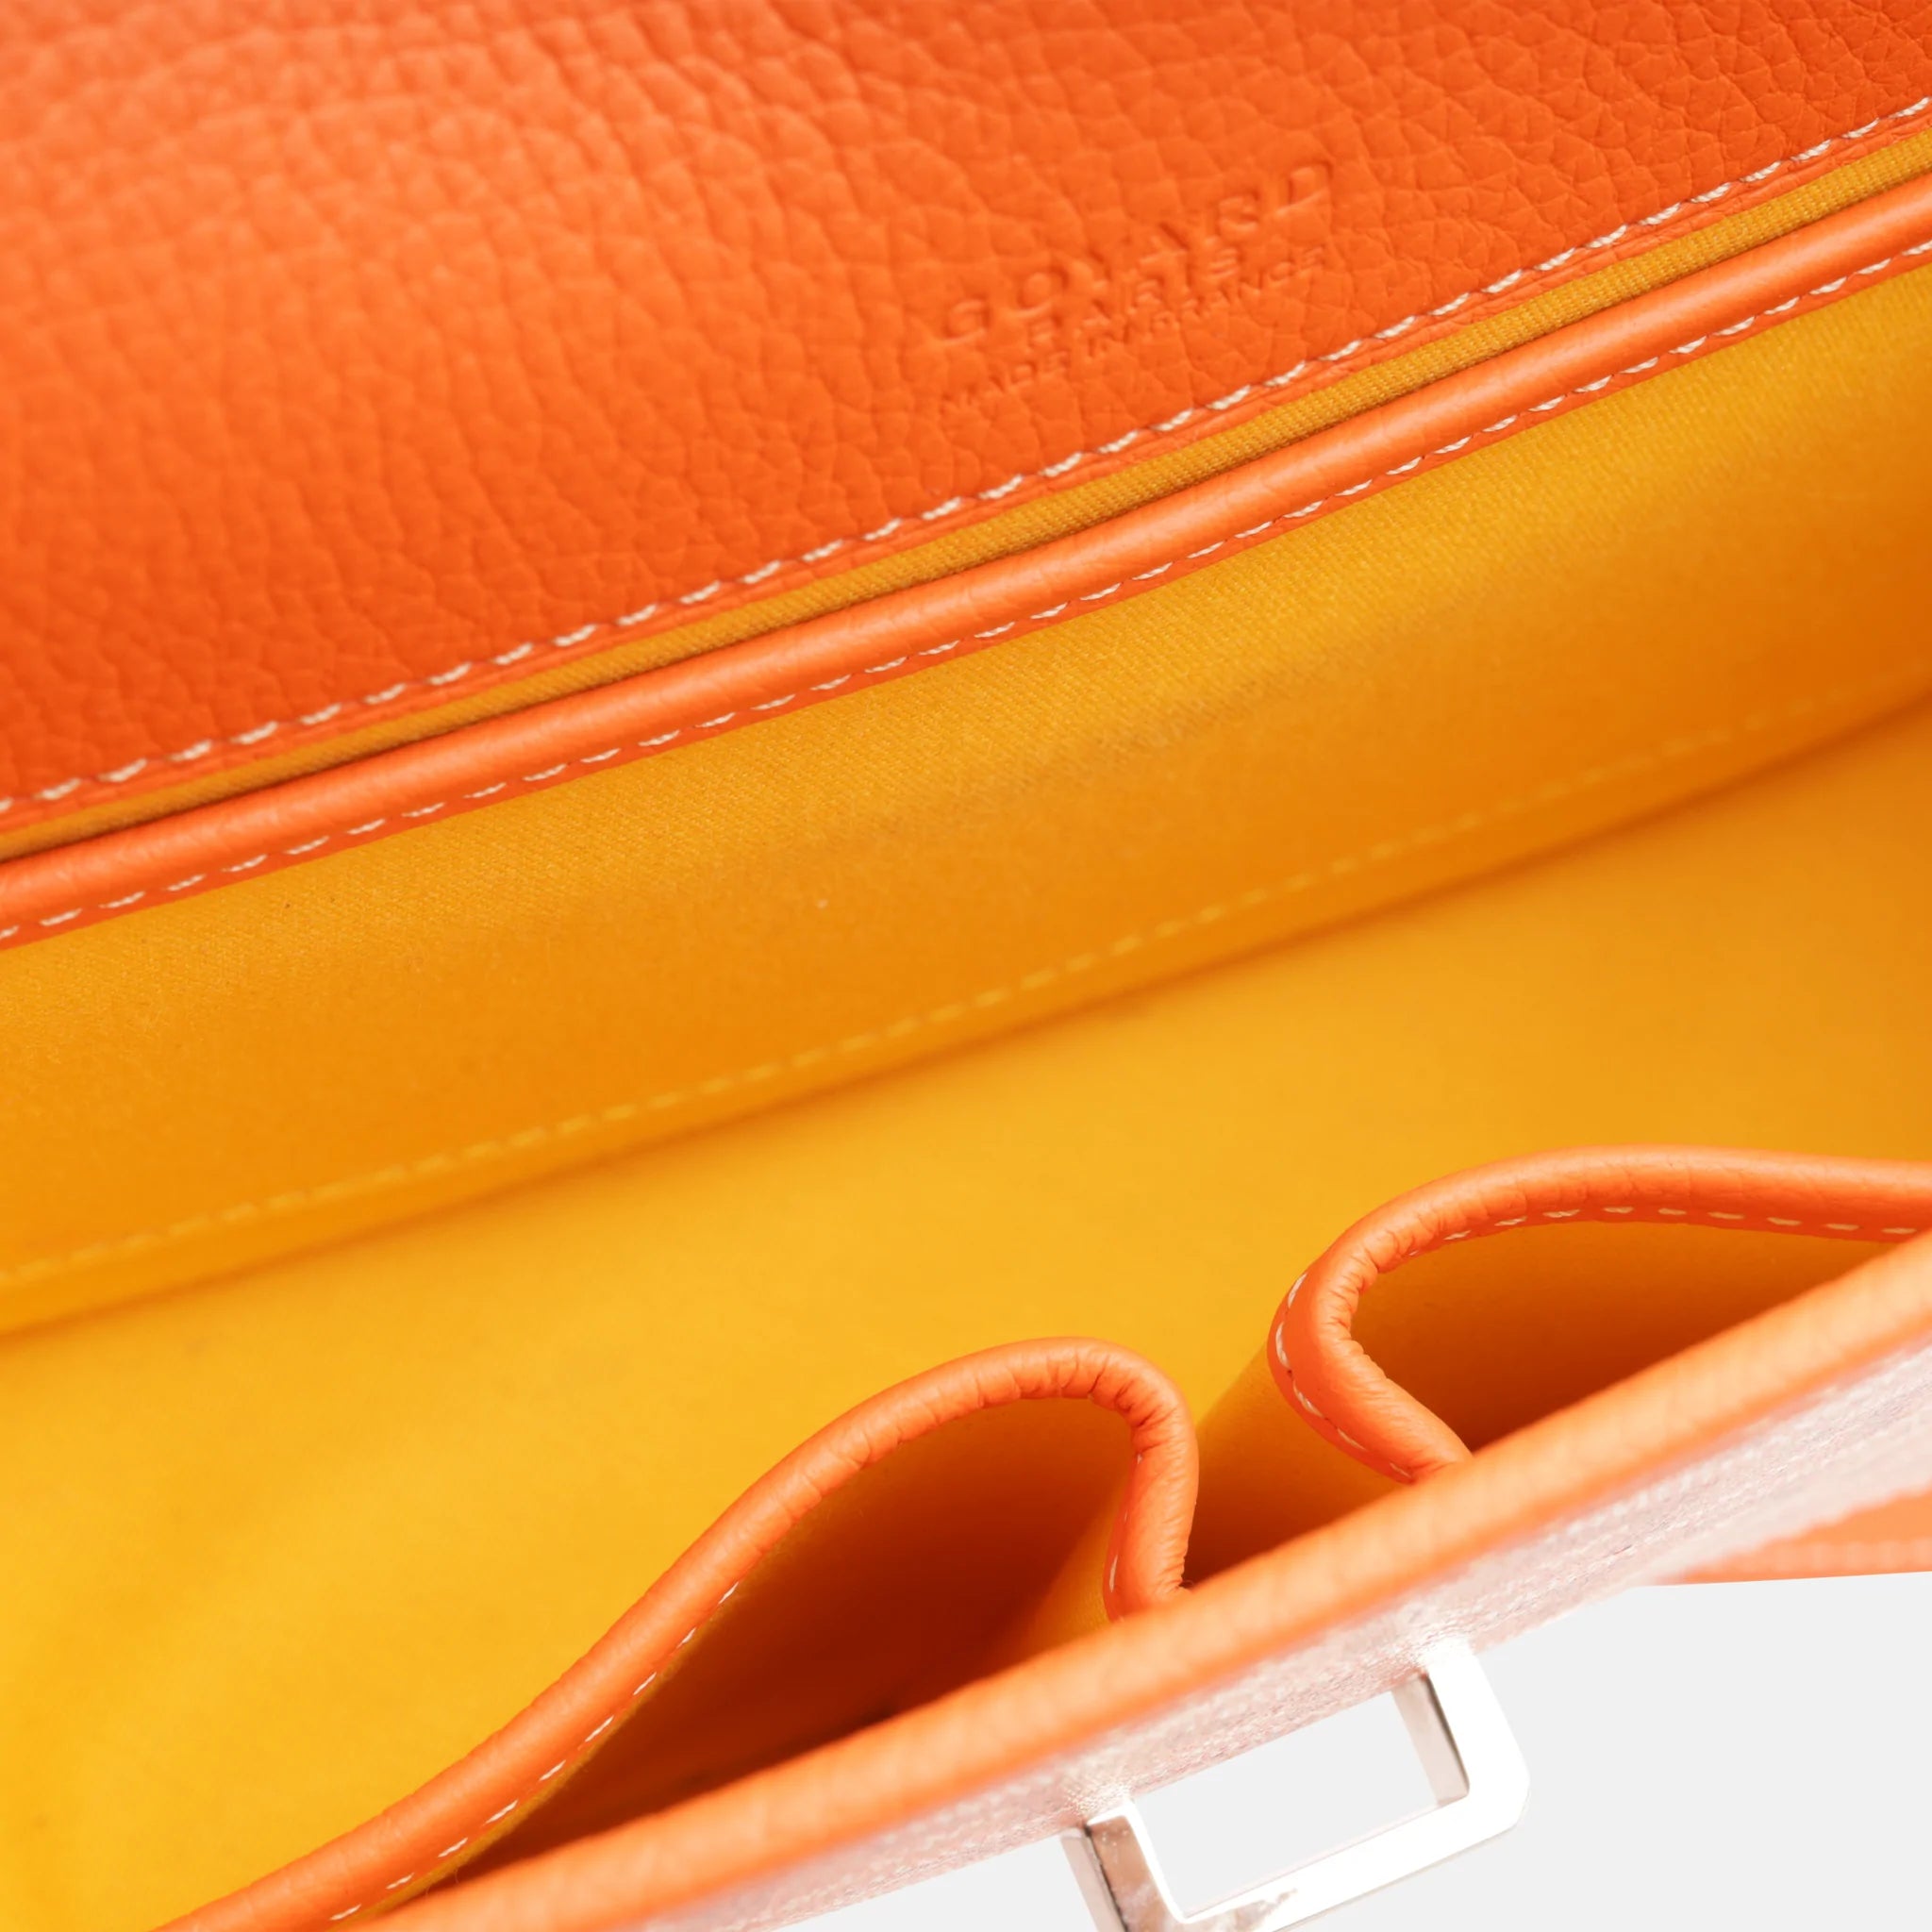 Goyard Belvedere PM - Orange (NWT) – Lux Second Chance